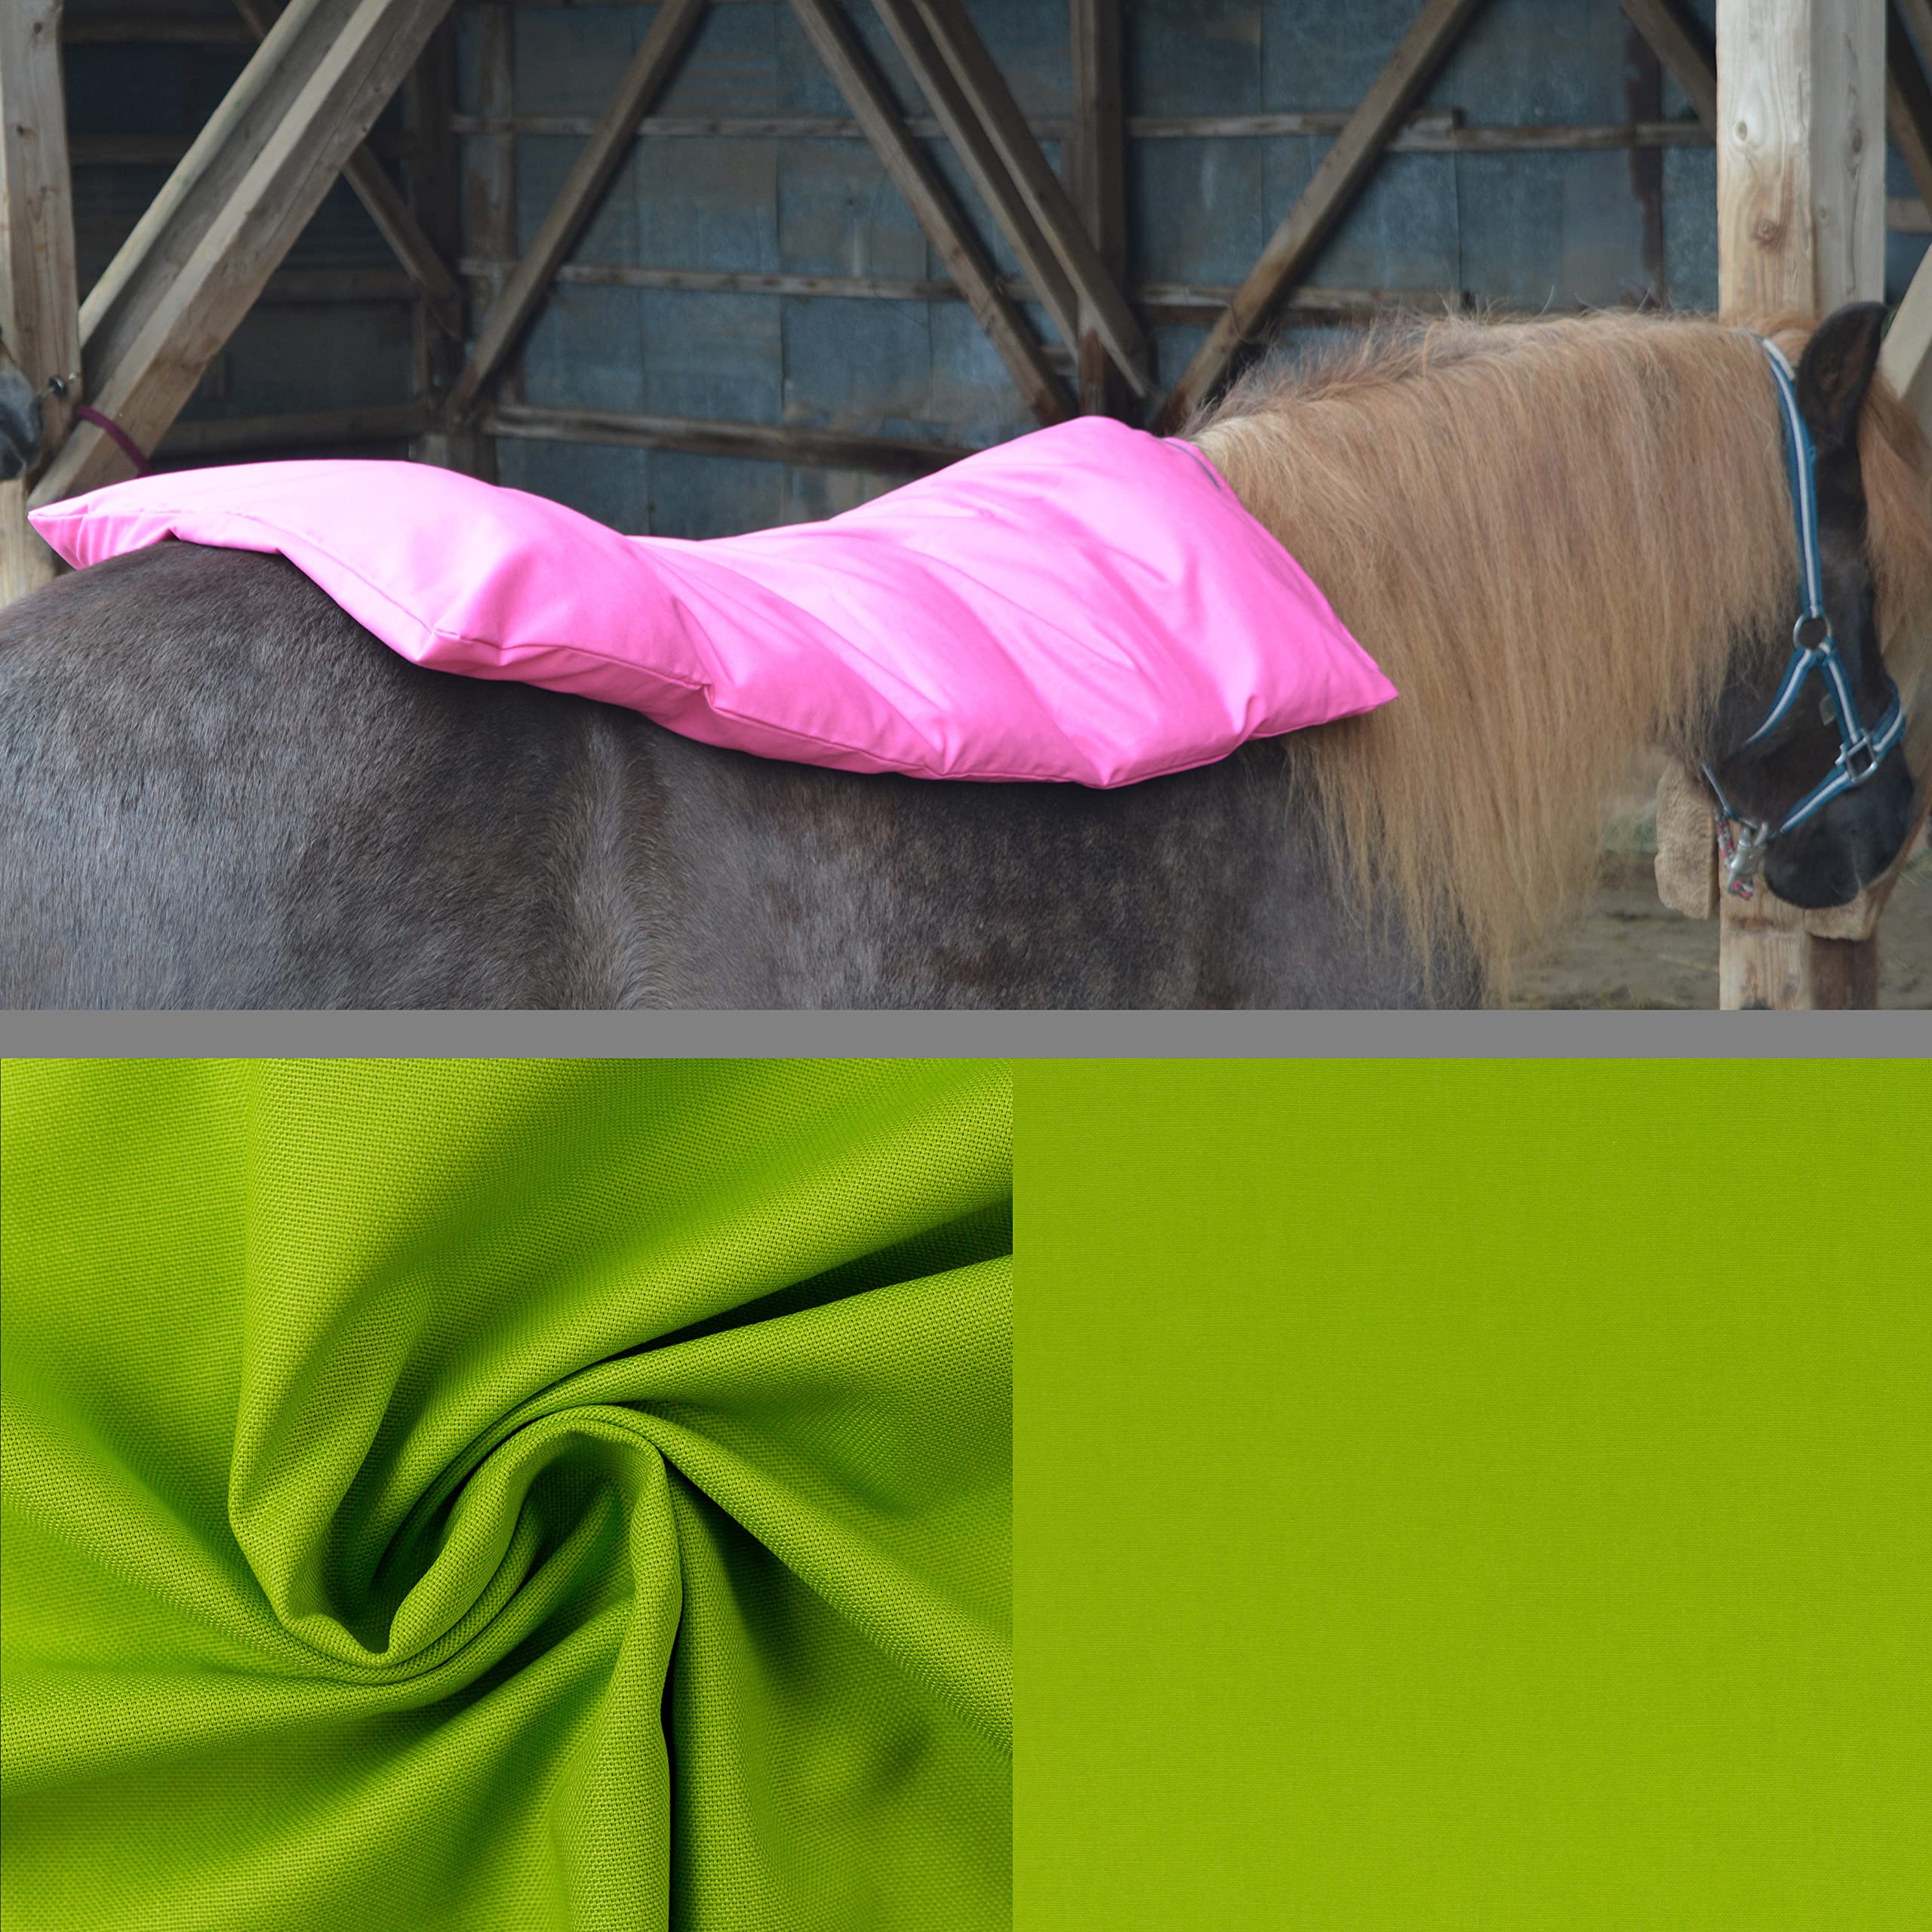 Teichwerk Dinkelspelzkissen Wärmekissen für Pferde Ponys Esel 1 farbig Hellgrün Füllung Premium Plus 70x68